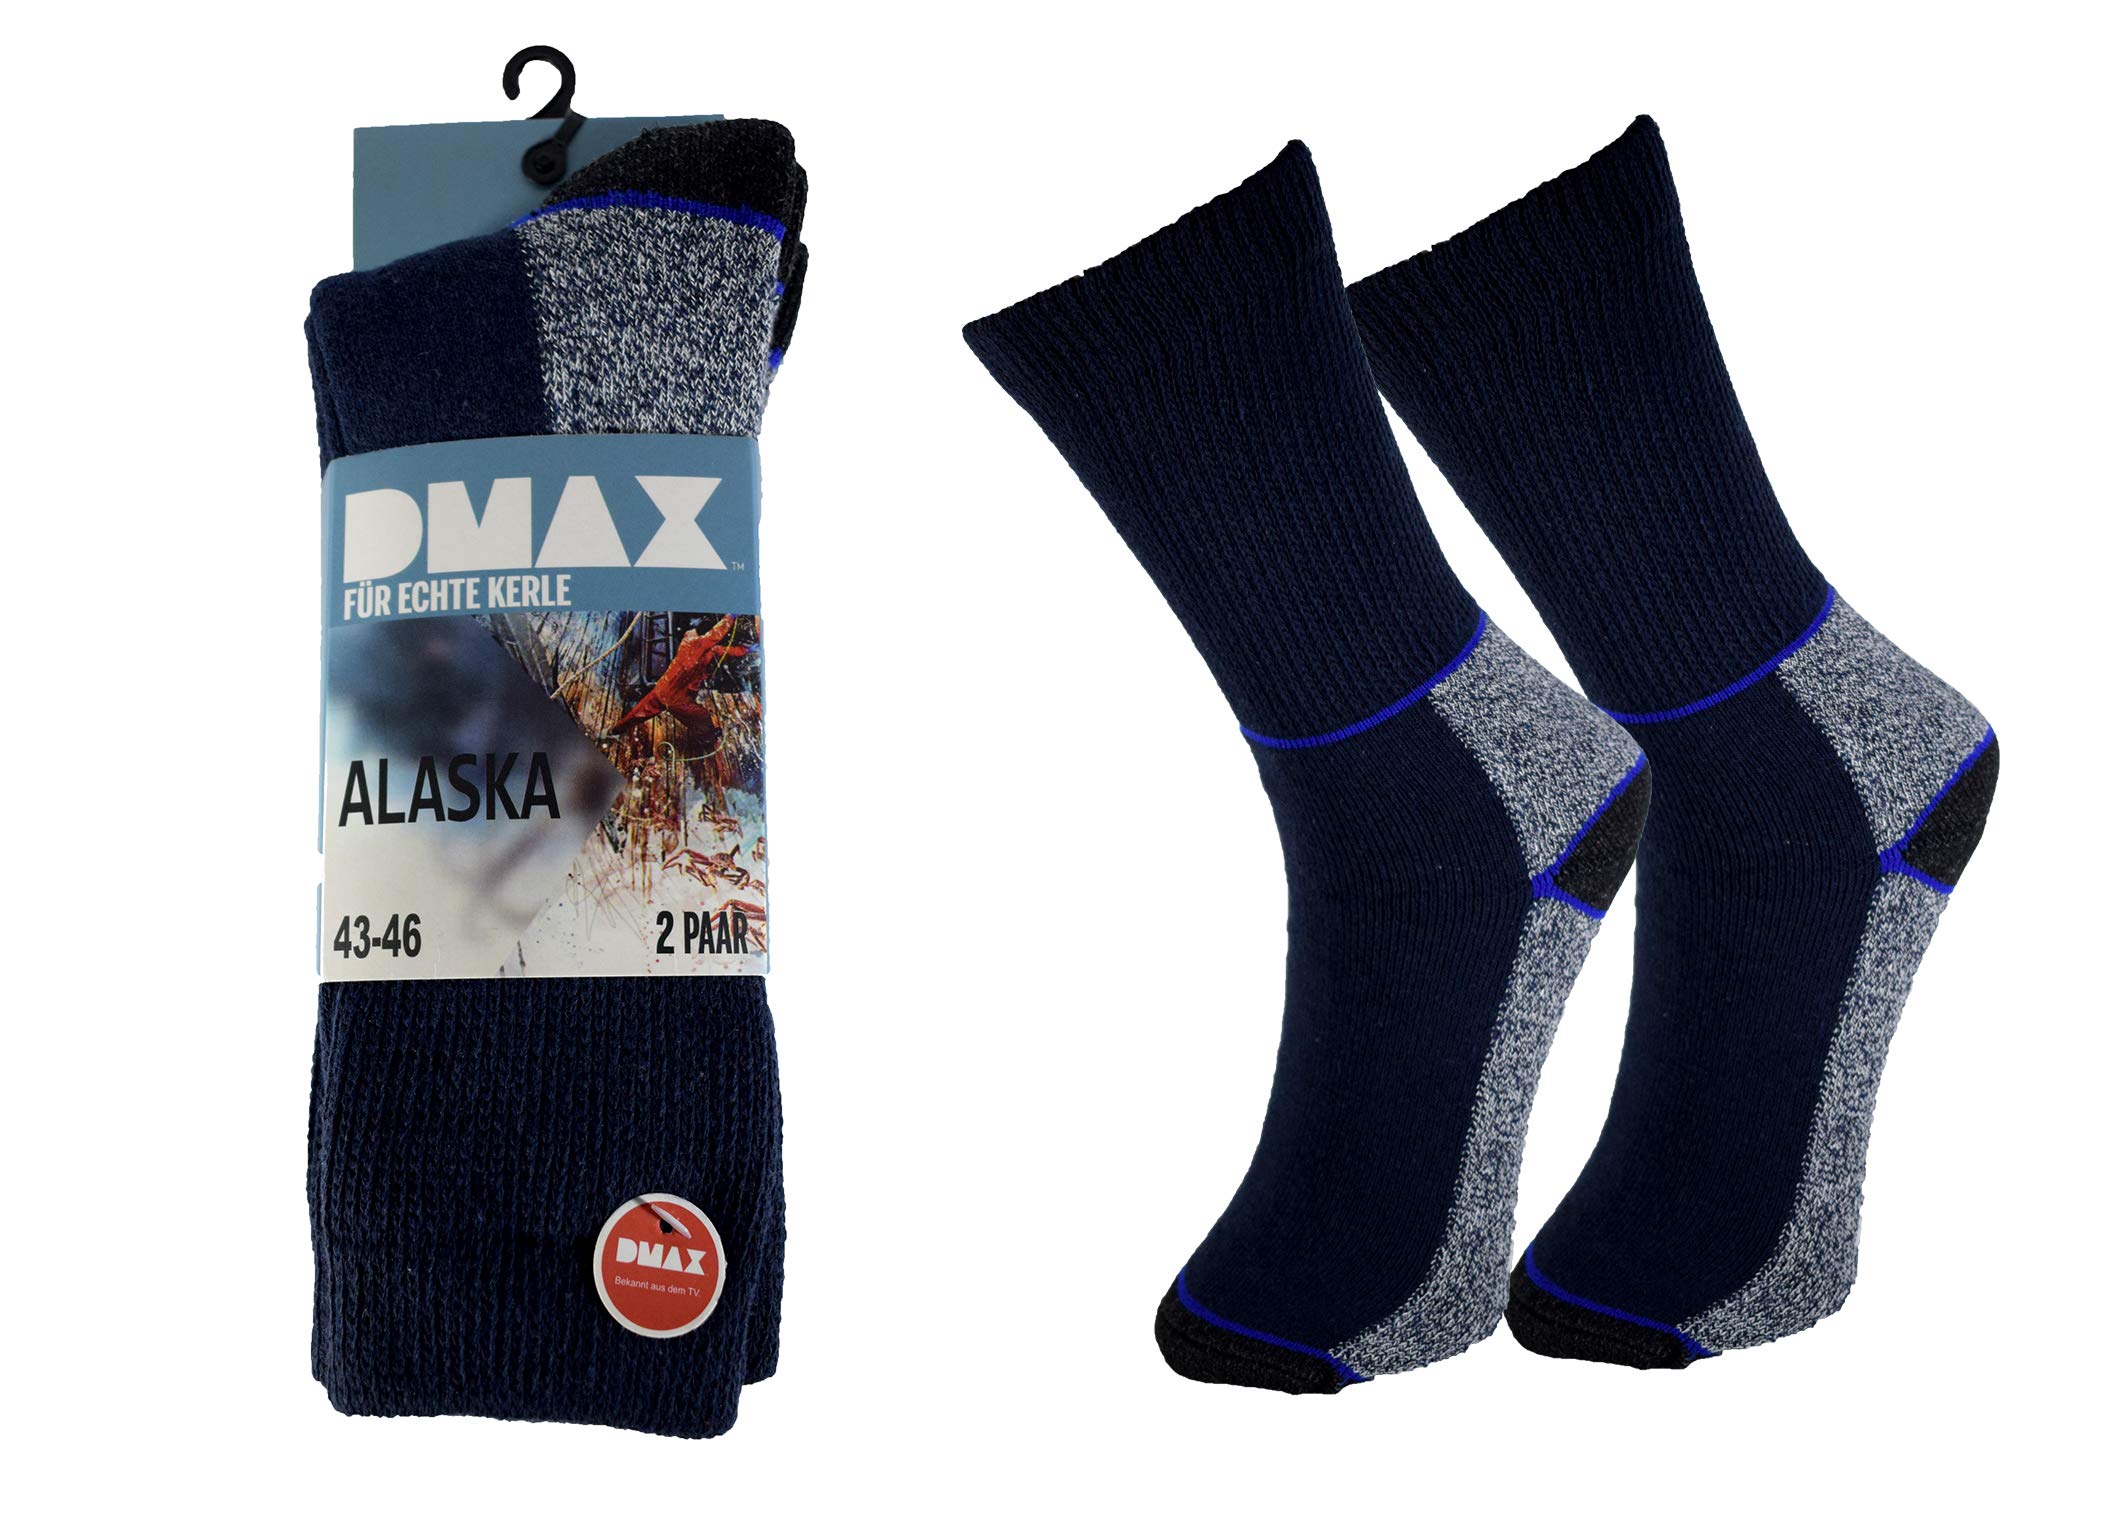 DMAX Alaska Thermosocken für echte Kerle - 4|6|12 Paar - wahlweise in Schwarz, Anthrazit, Blau und drei Größen 39-42/43-46/47-50 (39-42, 12 Paar Blau)